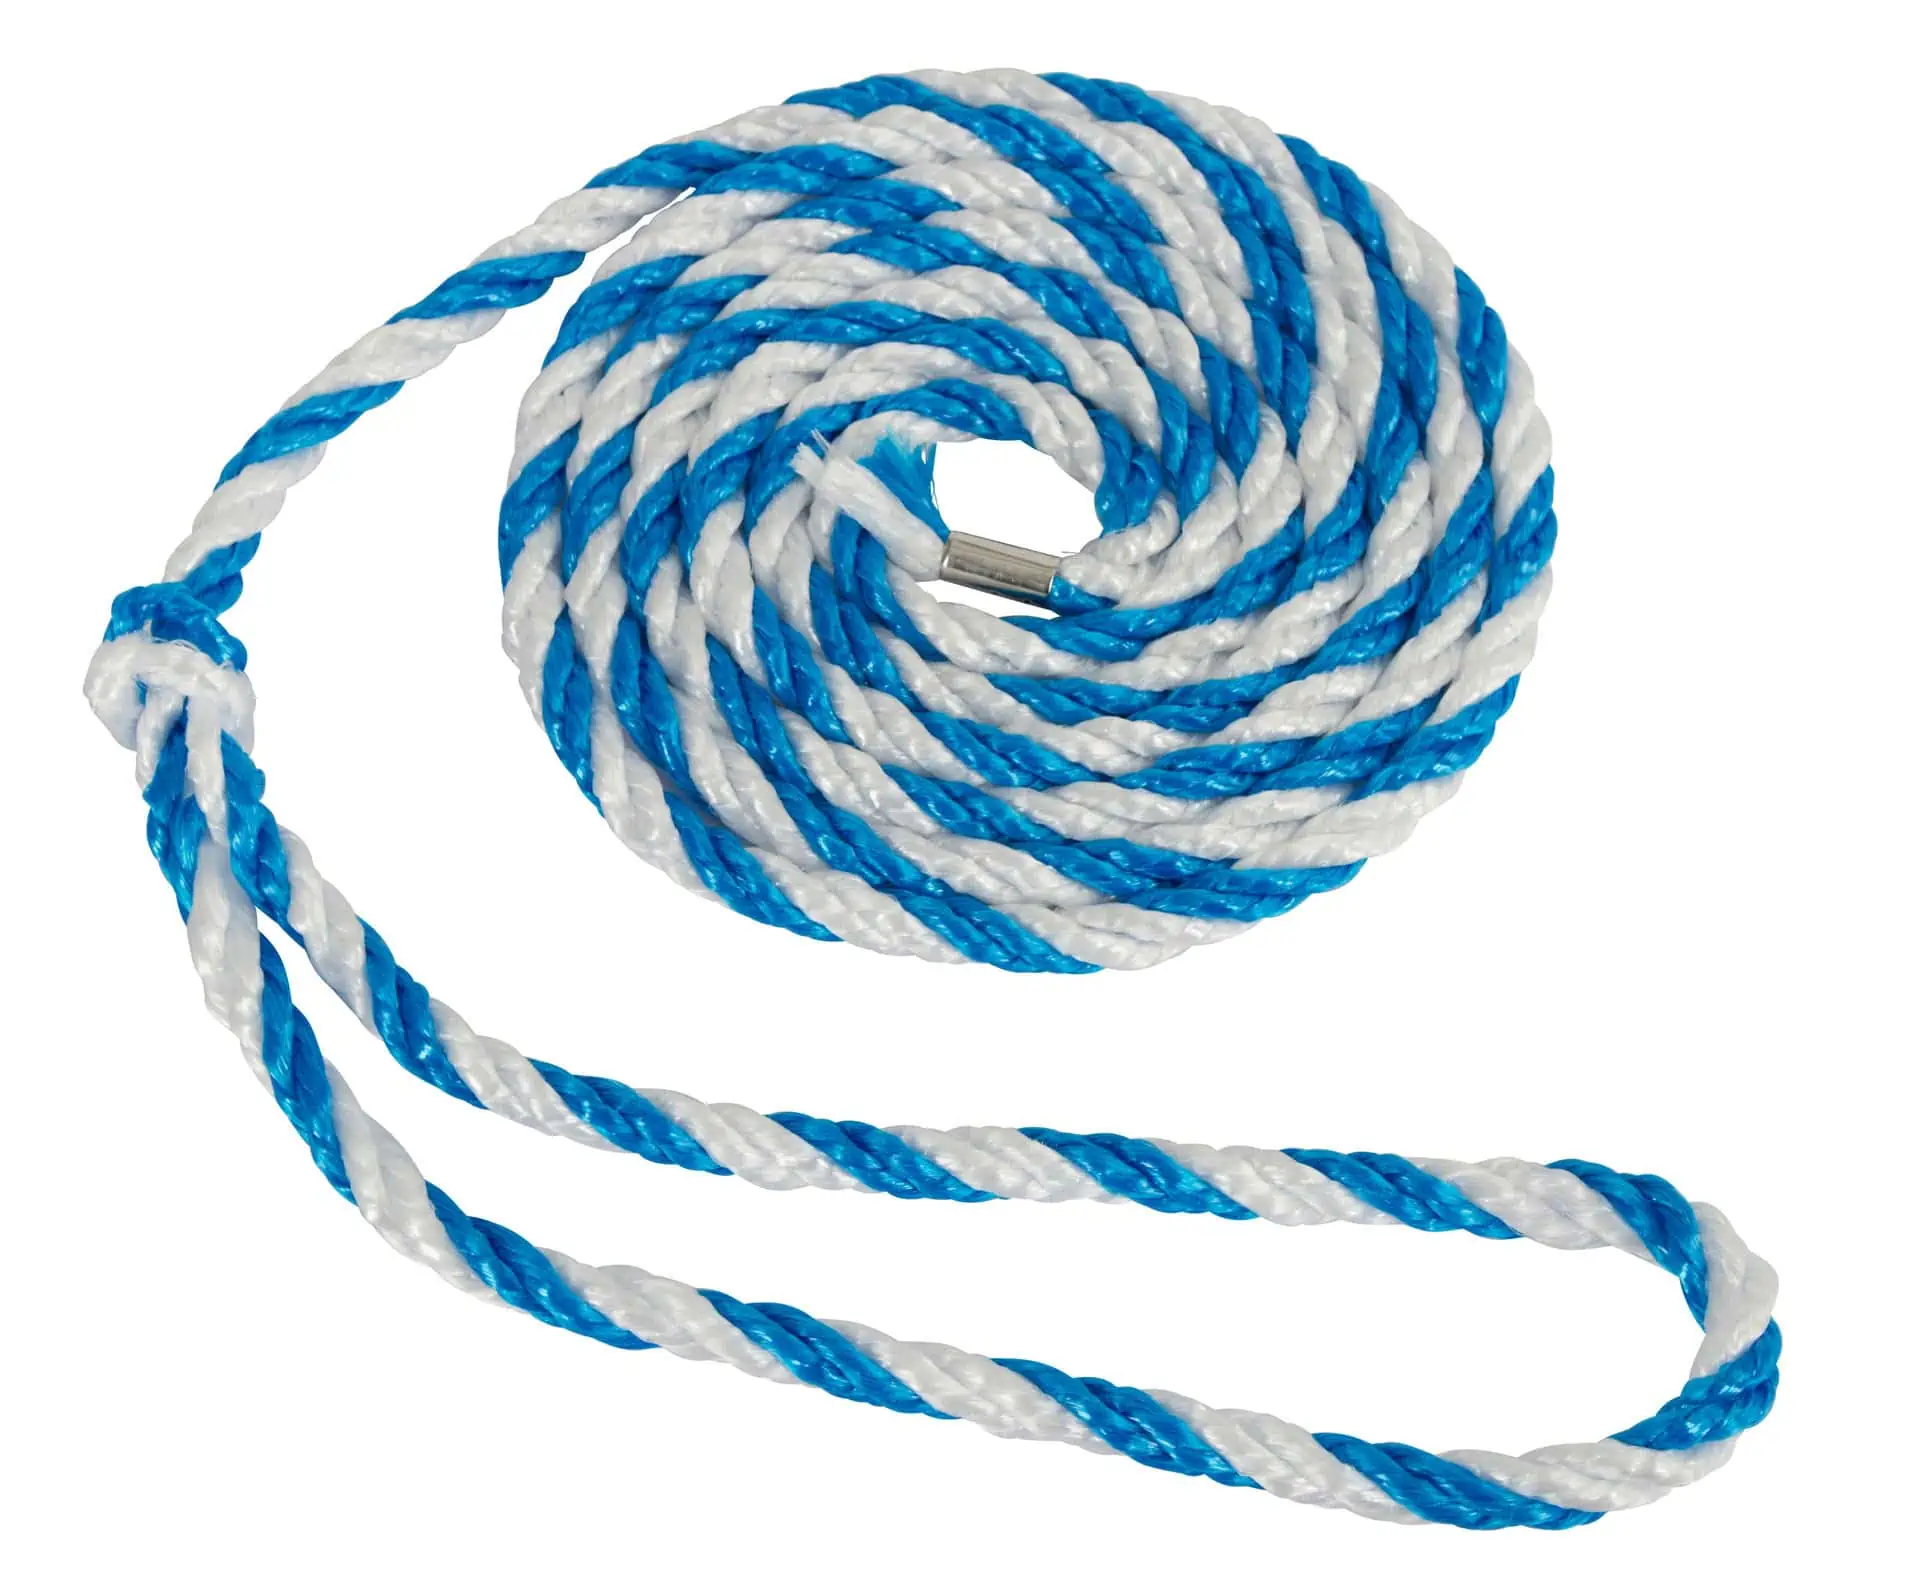 Livestock transport rope, large end loop, 320cm, blue/white